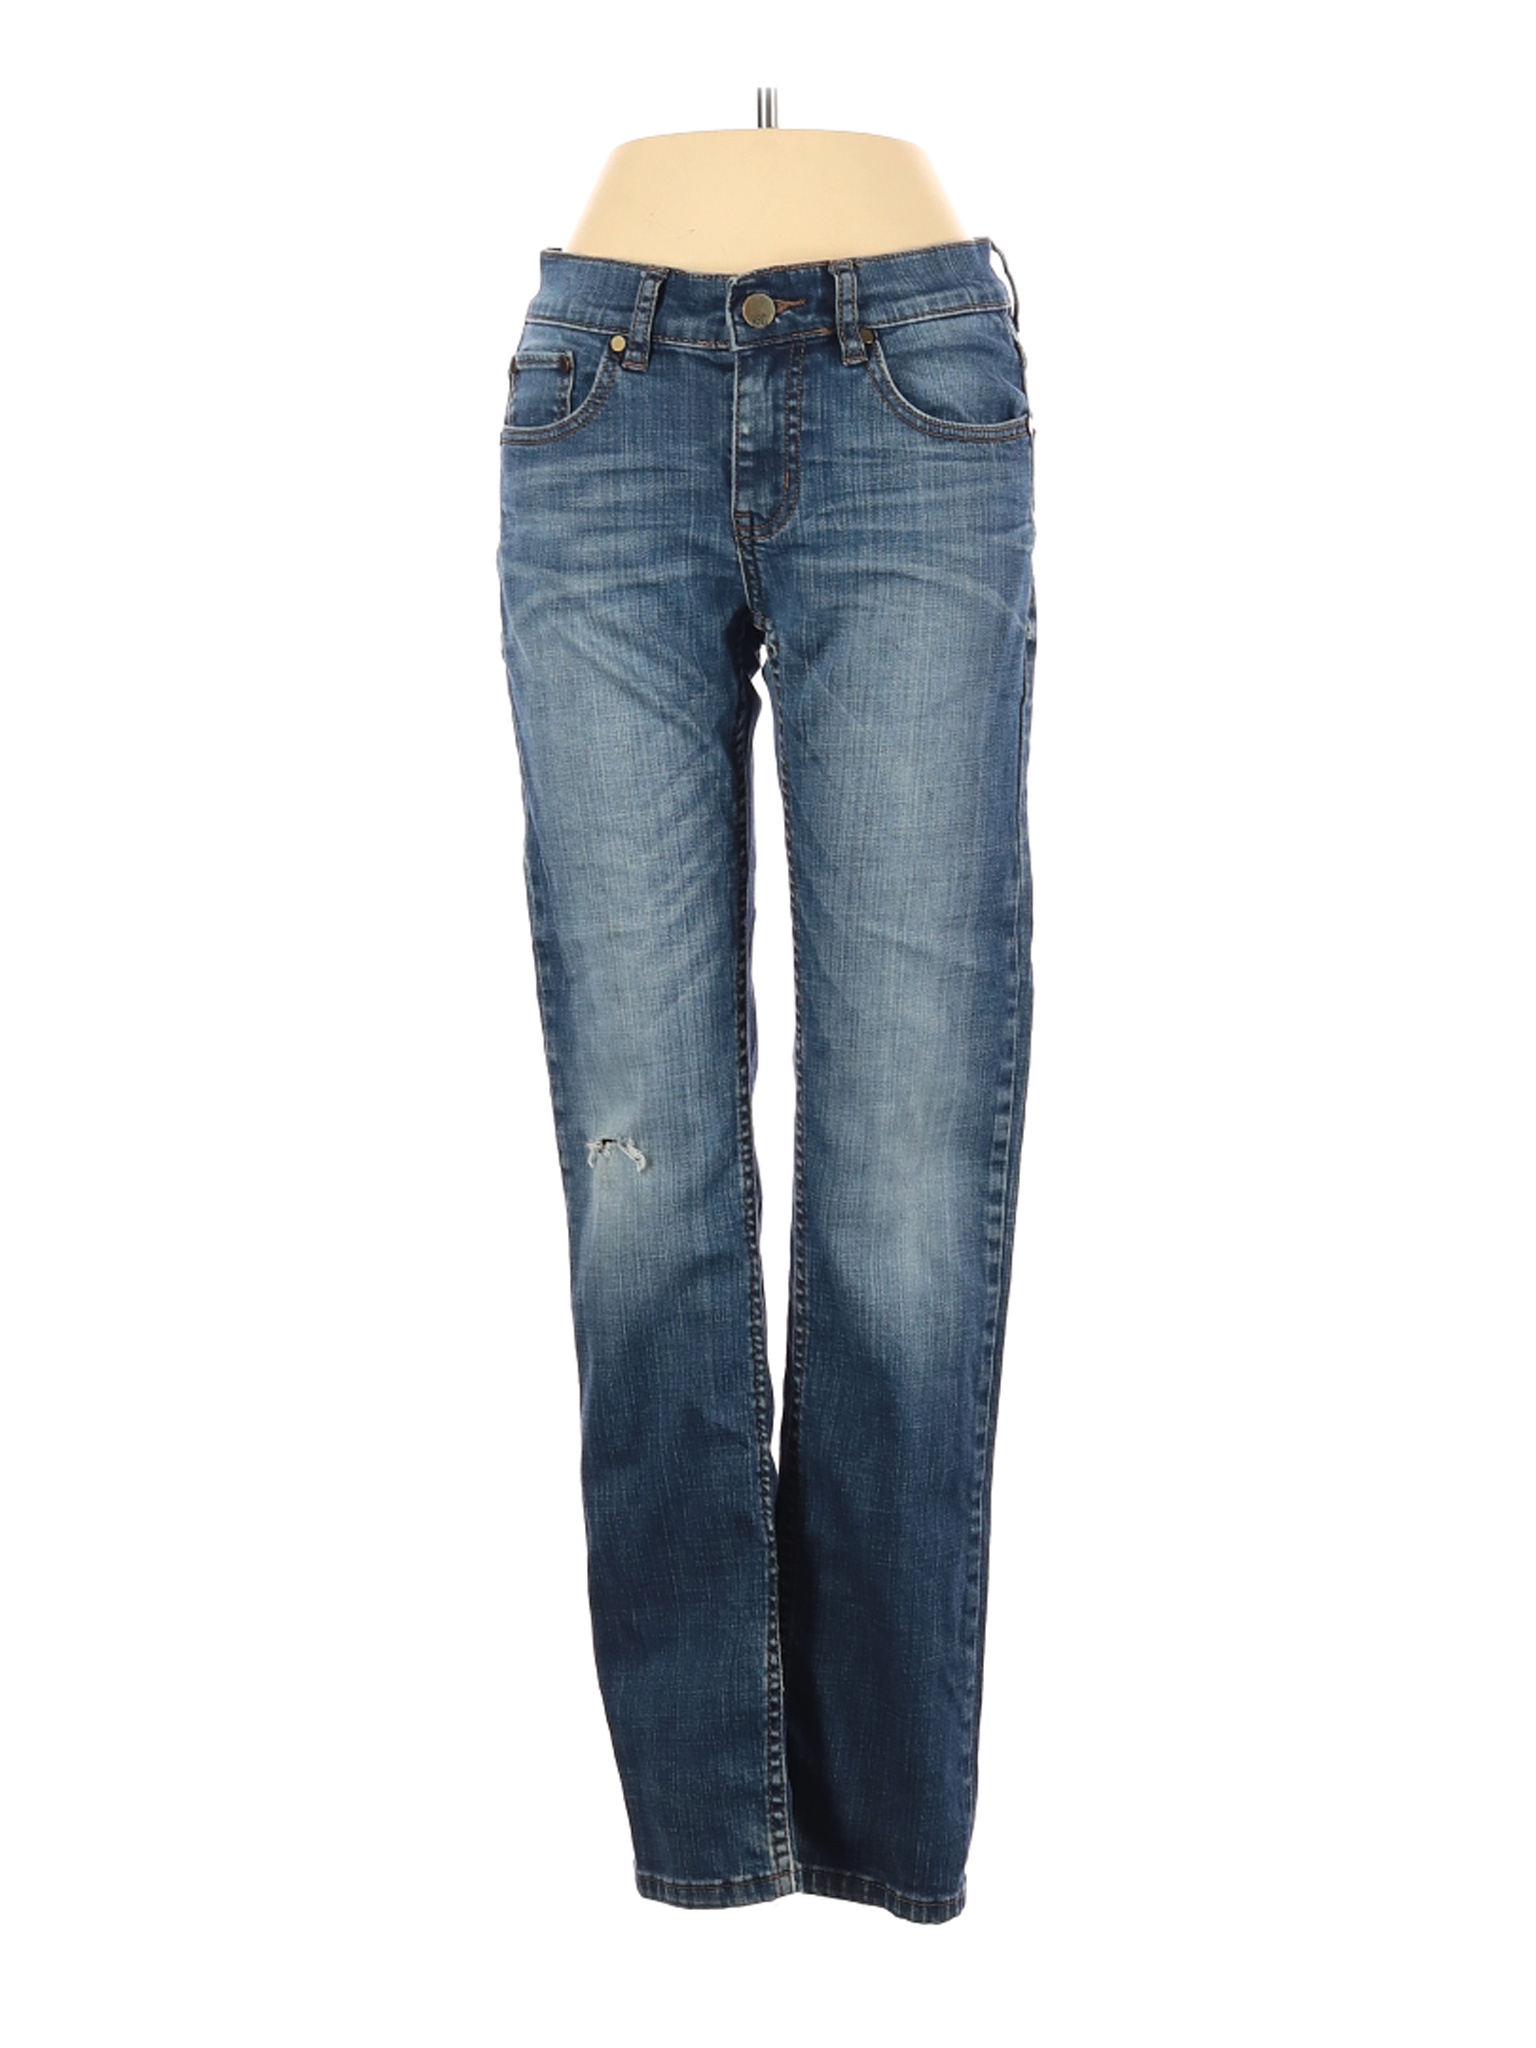 RSQ Women Blue Jeans 12 | eBay